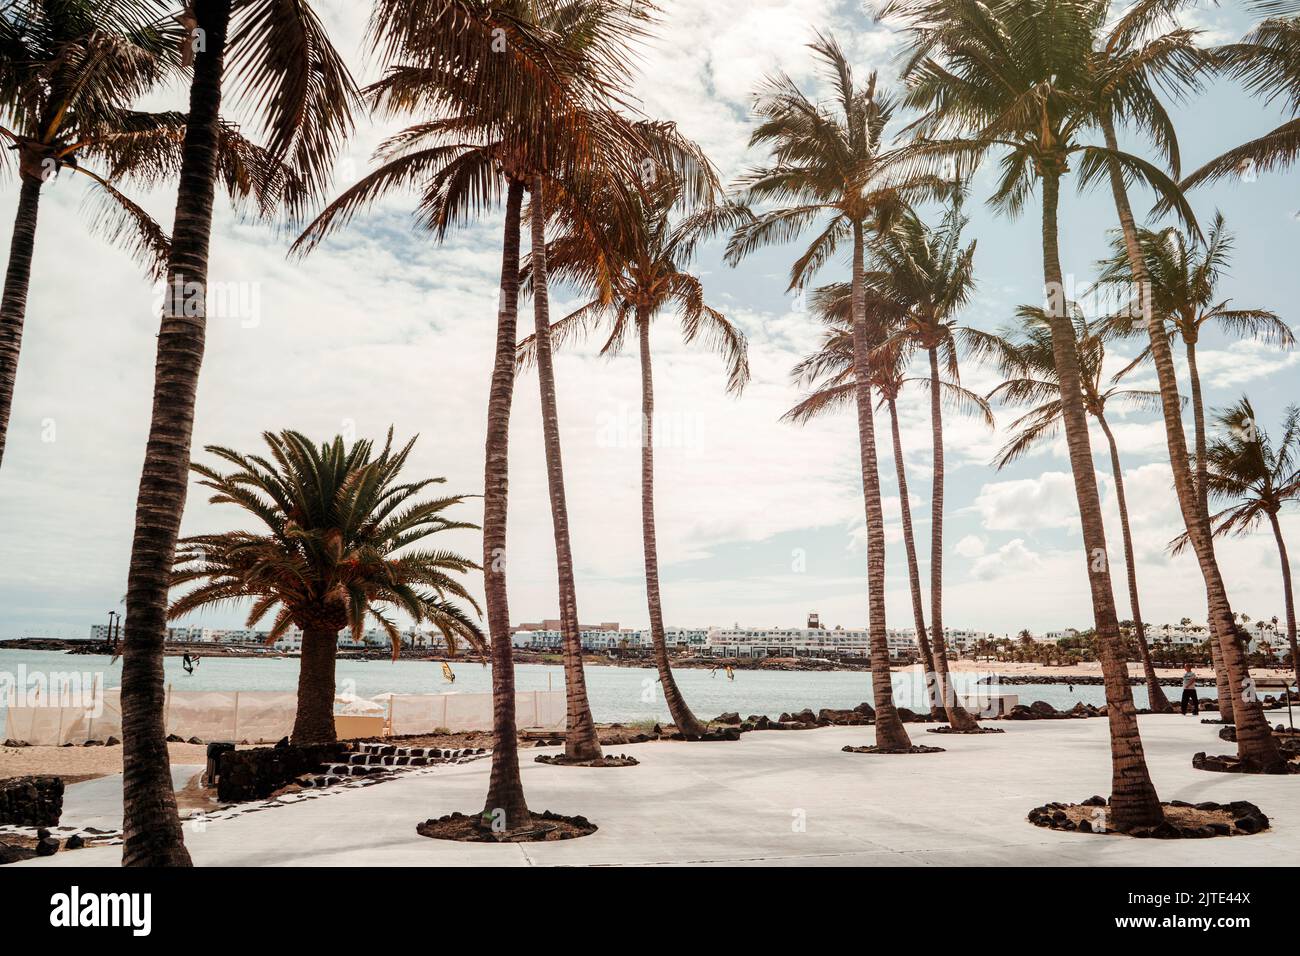 Alberi di palma sulla spiaggia di Las Cucharas in una località turistica chiamata Costa Teguise a Lanzarote, Isole Canarie, Spagna Foto Stock